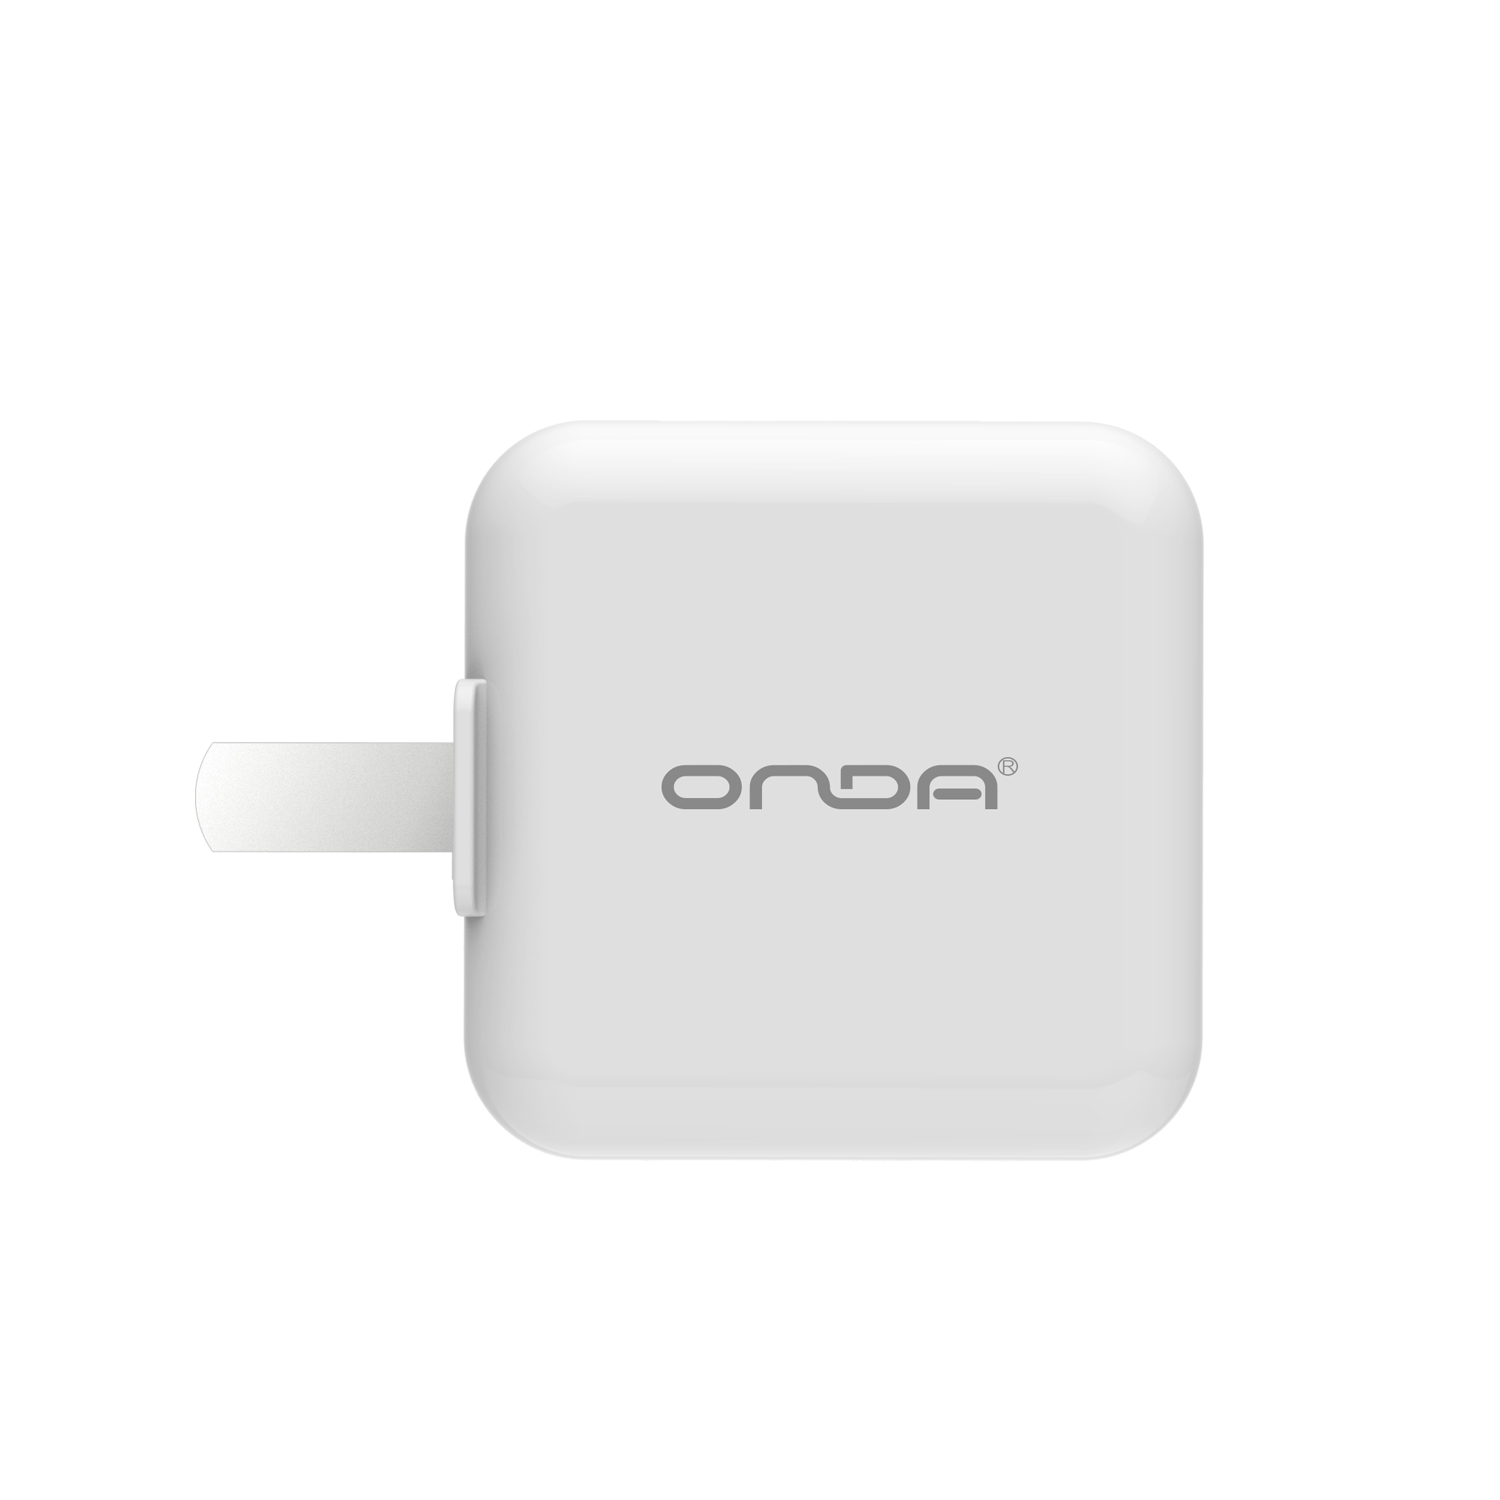 昂达(ONDA) A11 折叠式快充电器 平板电脑手机充电器 白色